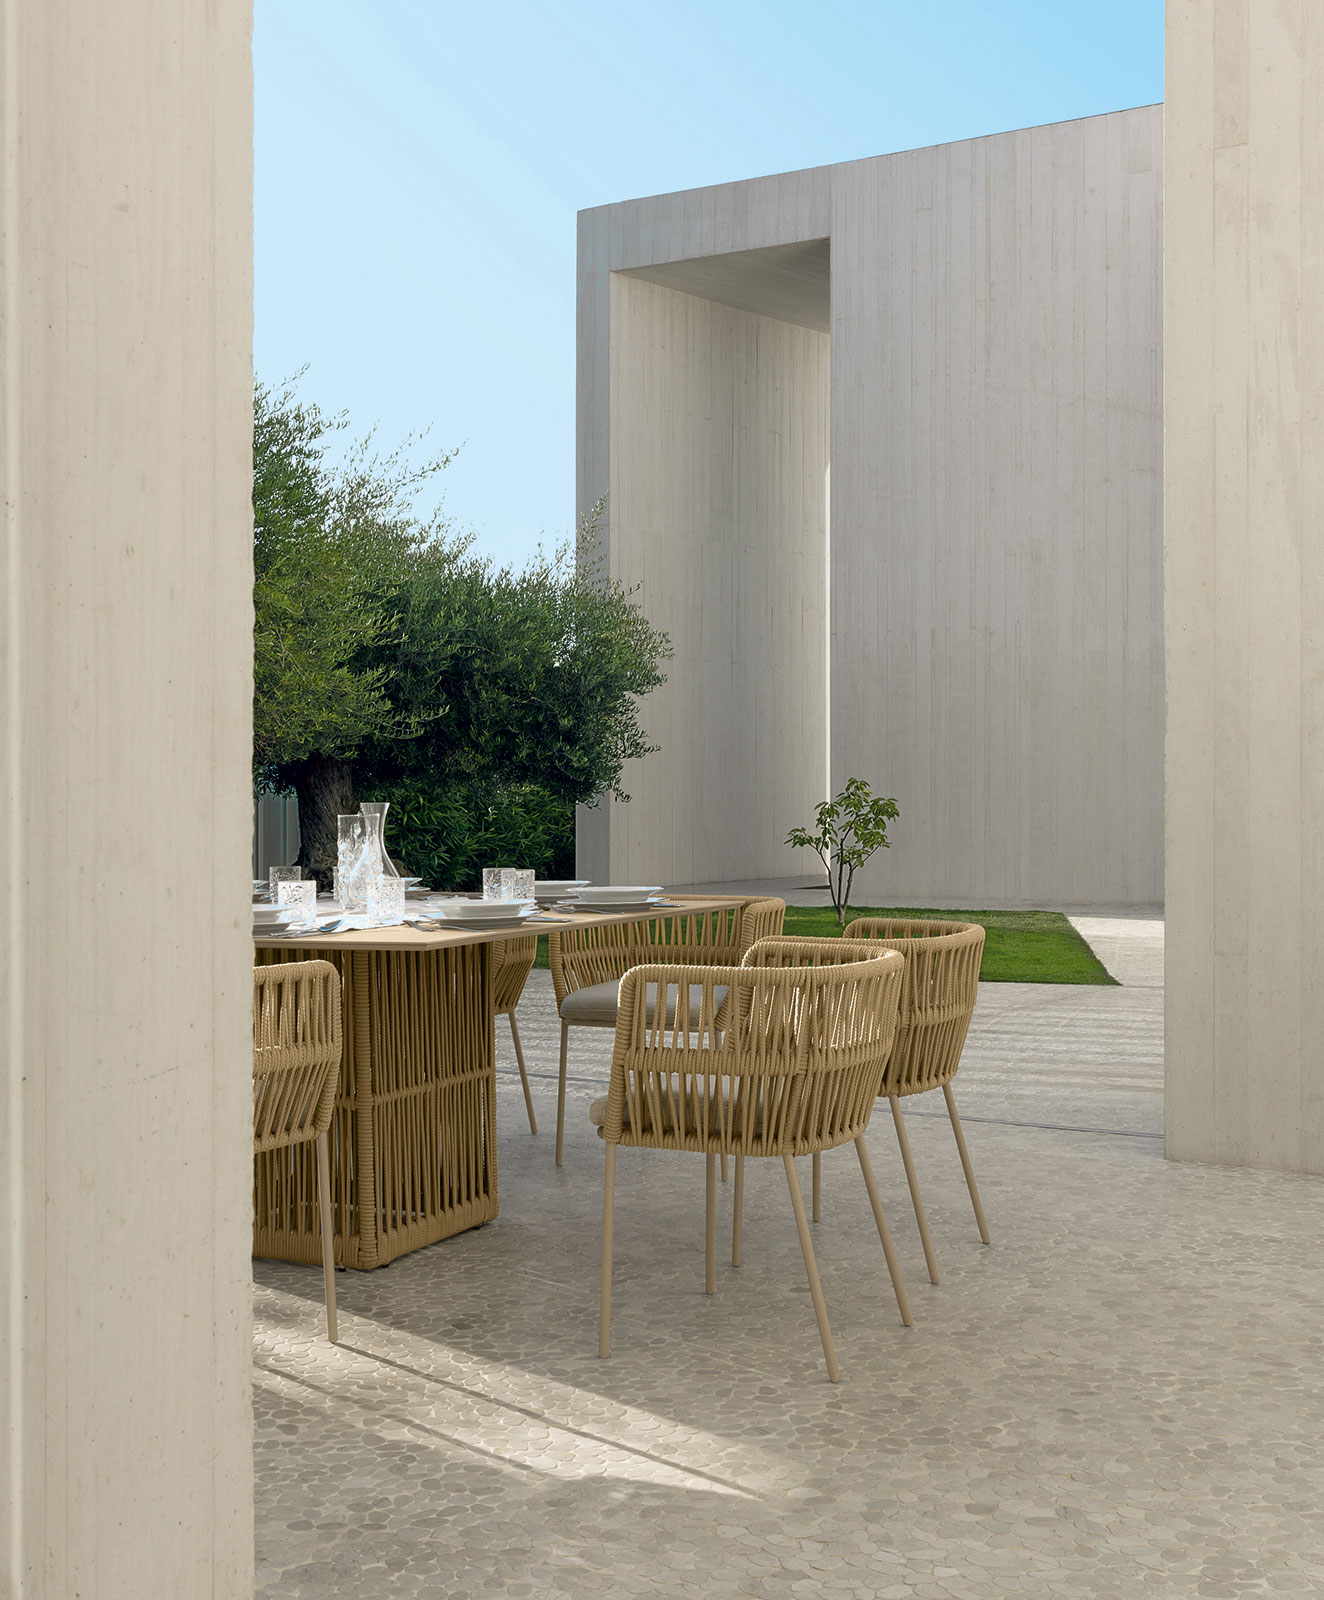 Fauteuil de jardin en aluminium et corde. Vente en ligne de meubles d'extérieur design haut de gamme pour balcons et terrasses avec livraison gratuite.